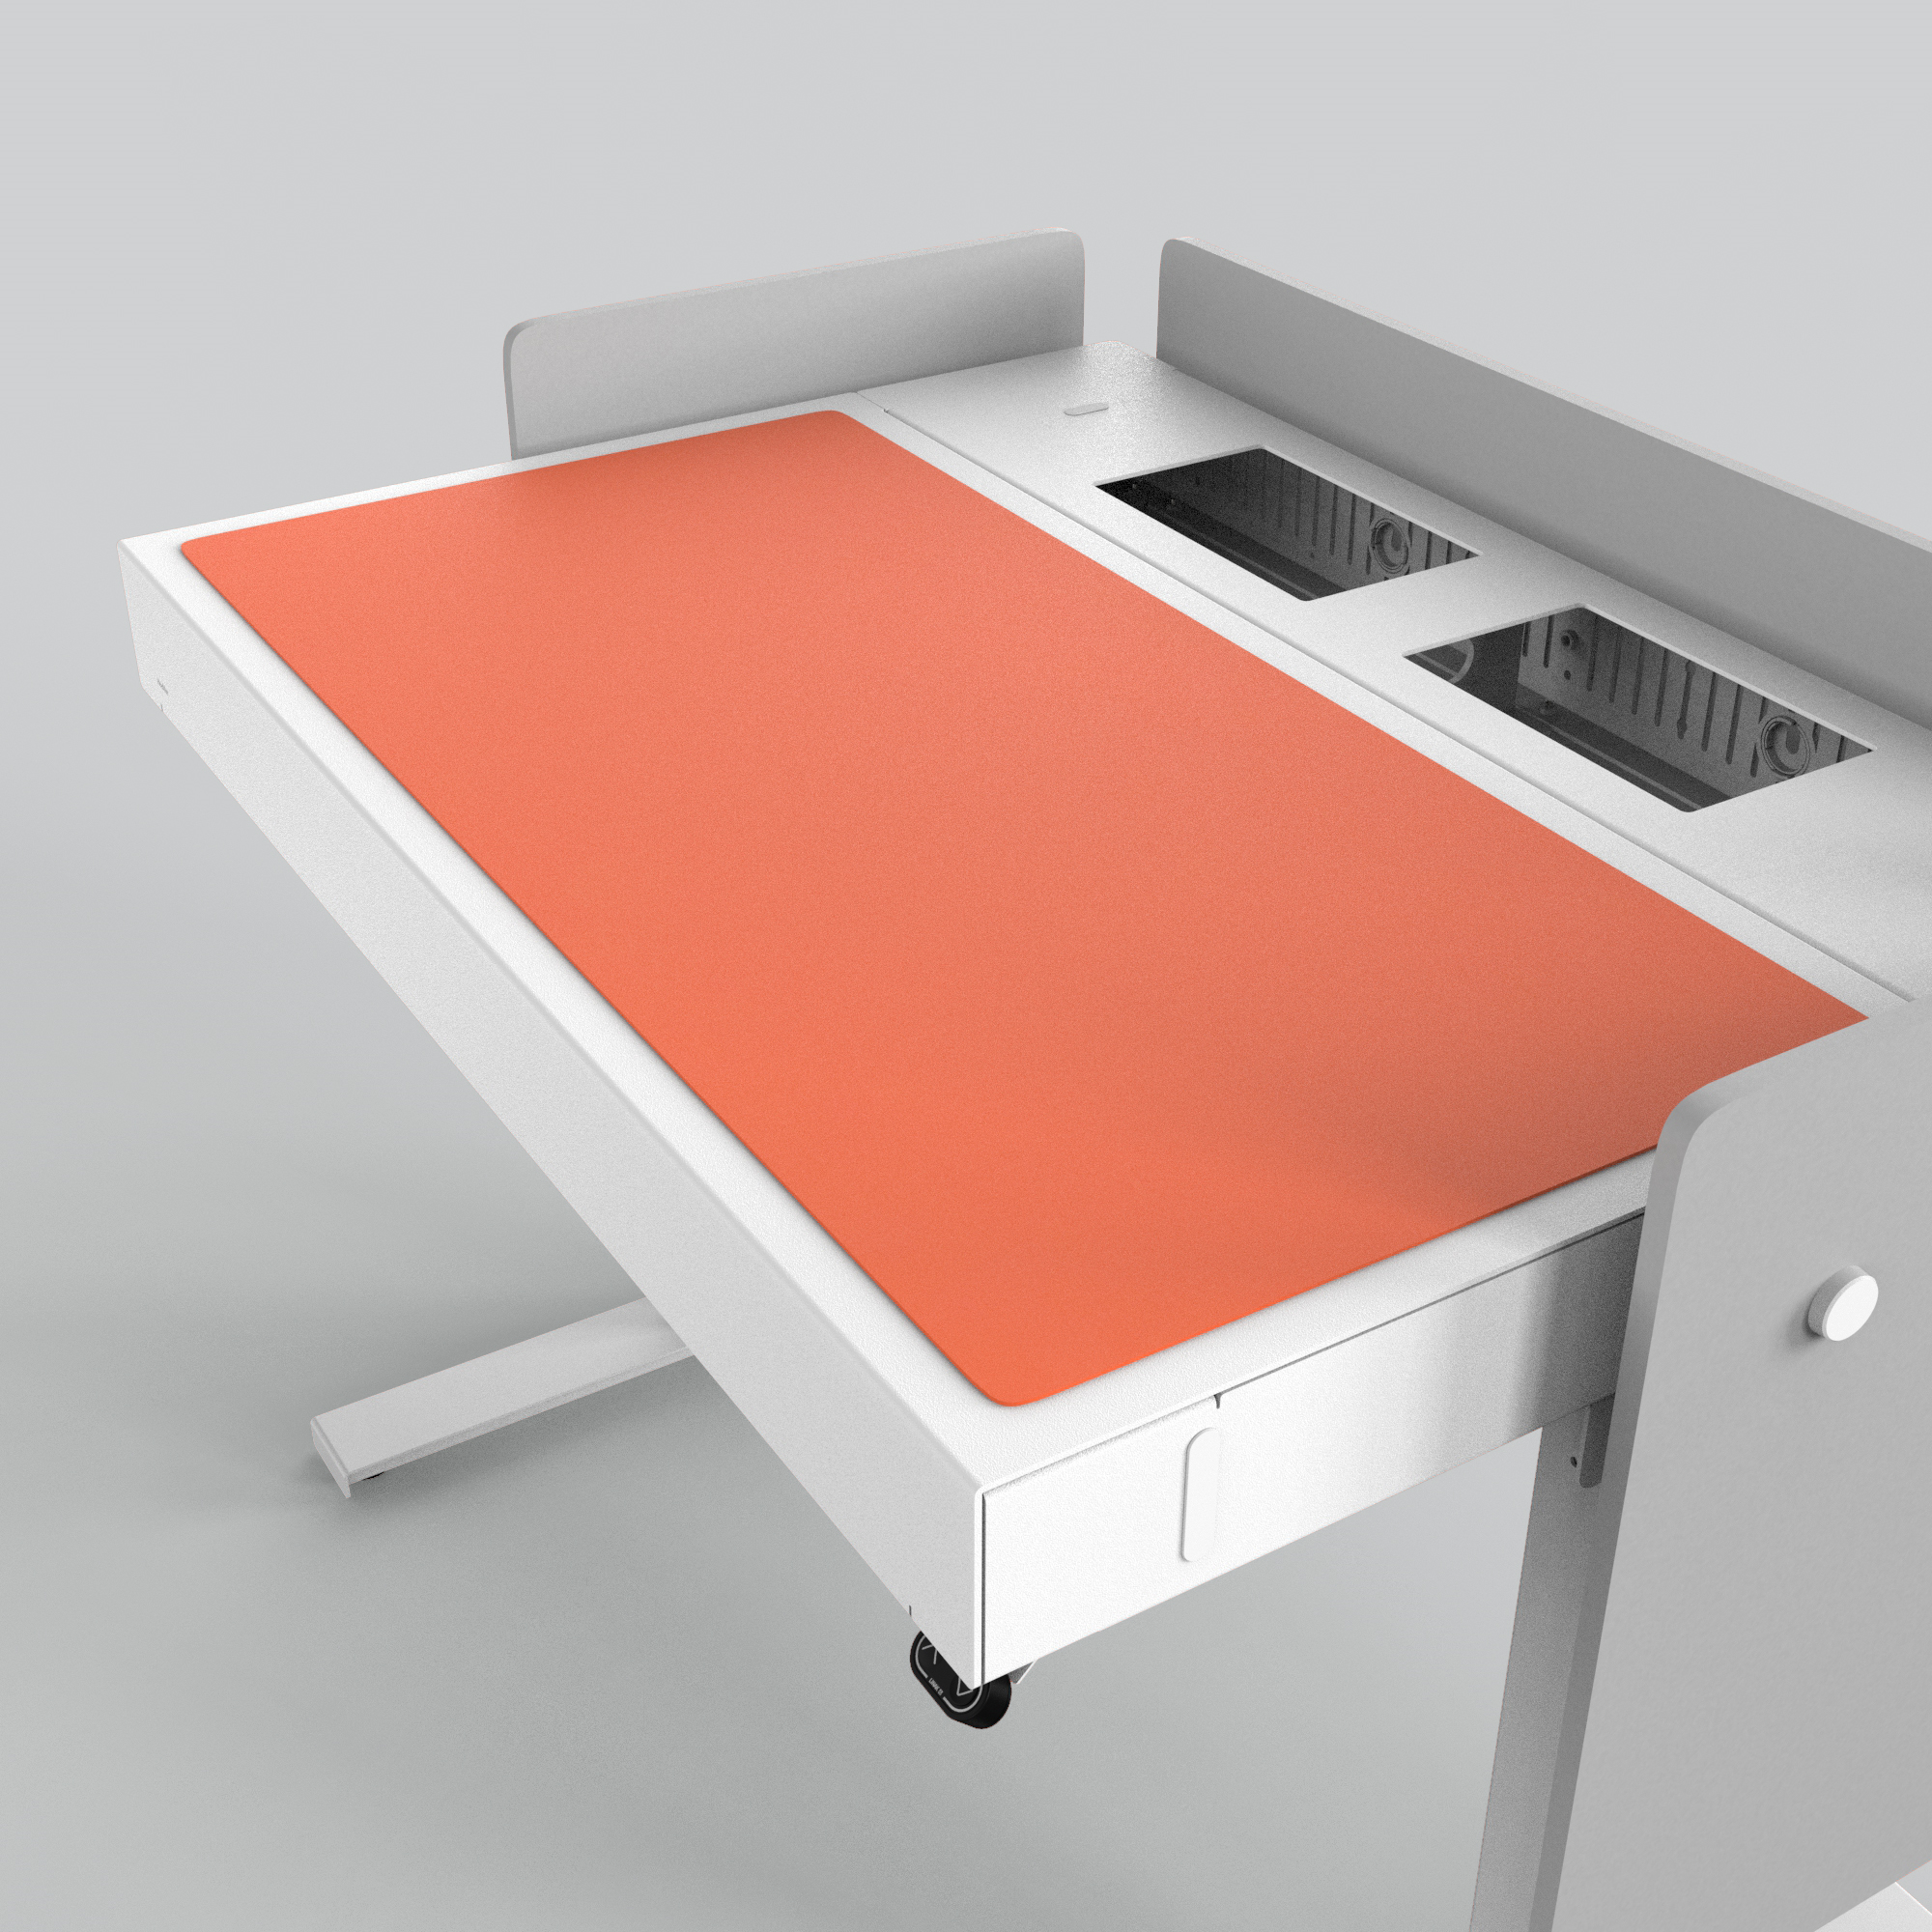 H922-4186 4U Deskpad - Orange Blast